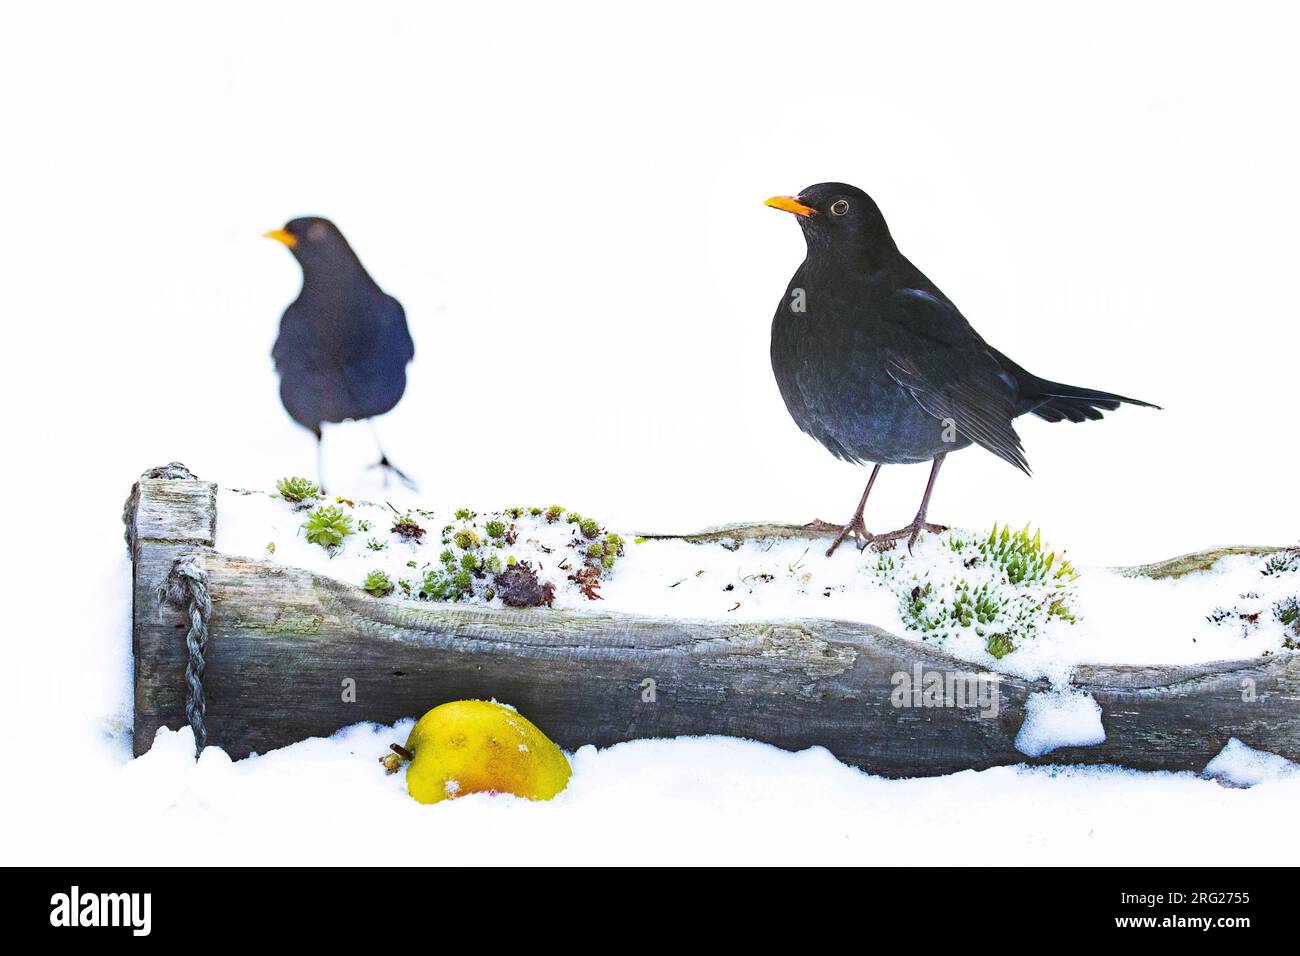 Oiseau noir européen mâle (Turdus merula) se nourrissant de pommes dans la neige dans une cour urbaine aux pays-Bas. Banque D'Images